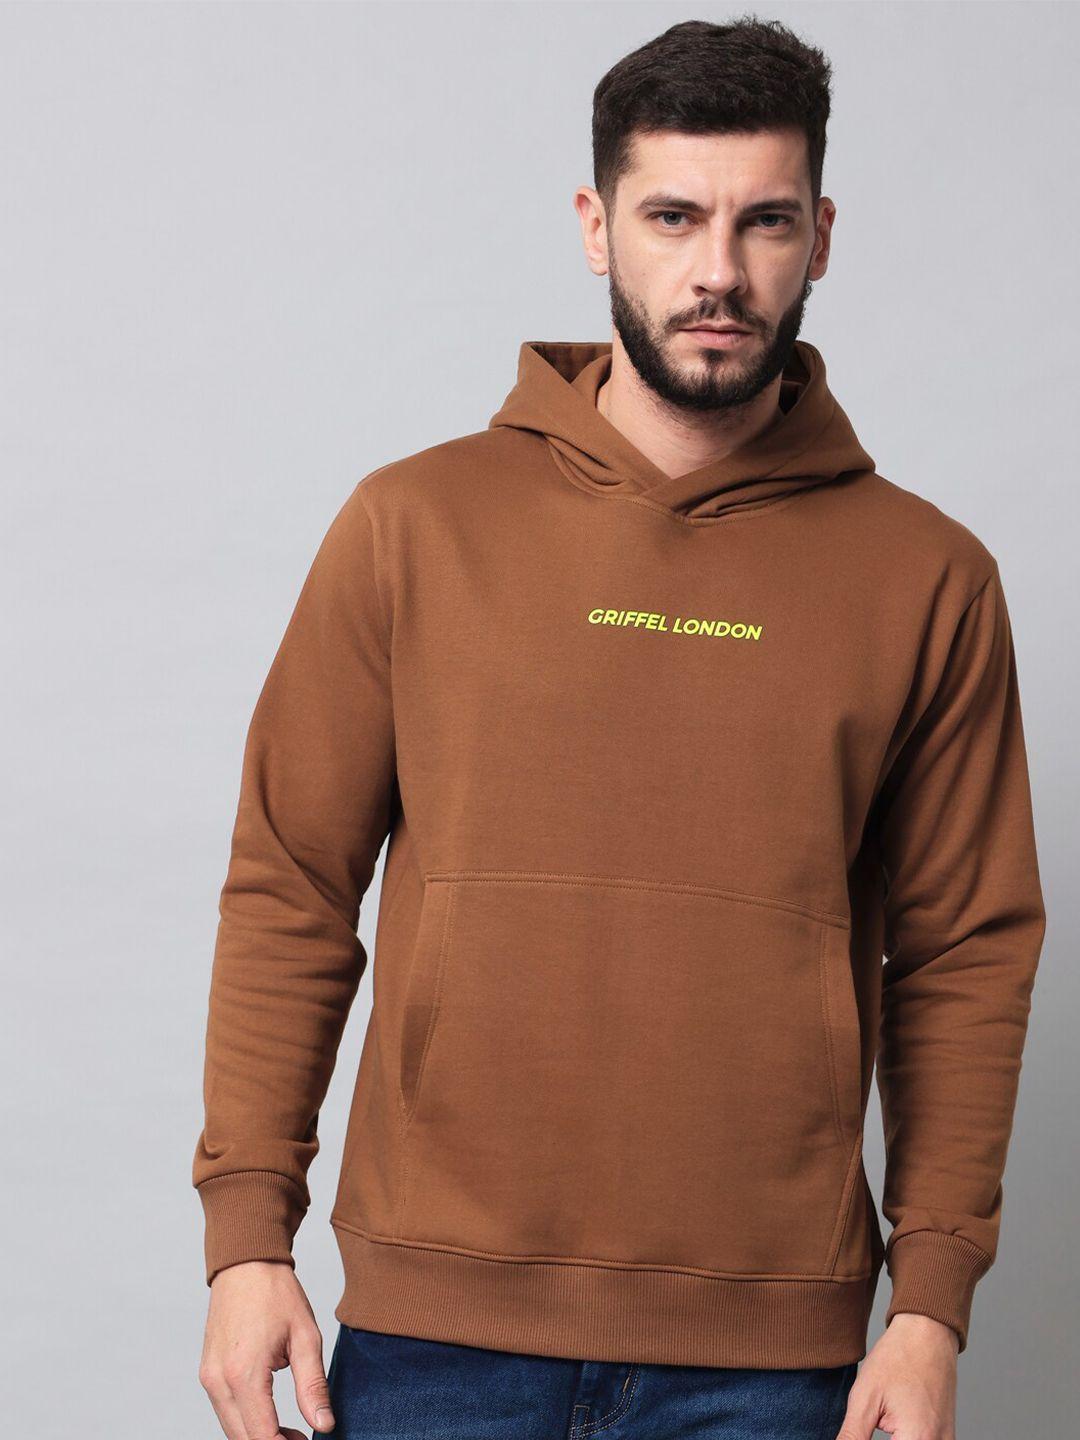 griffel-long-sleeves-hooded-sweatshirt